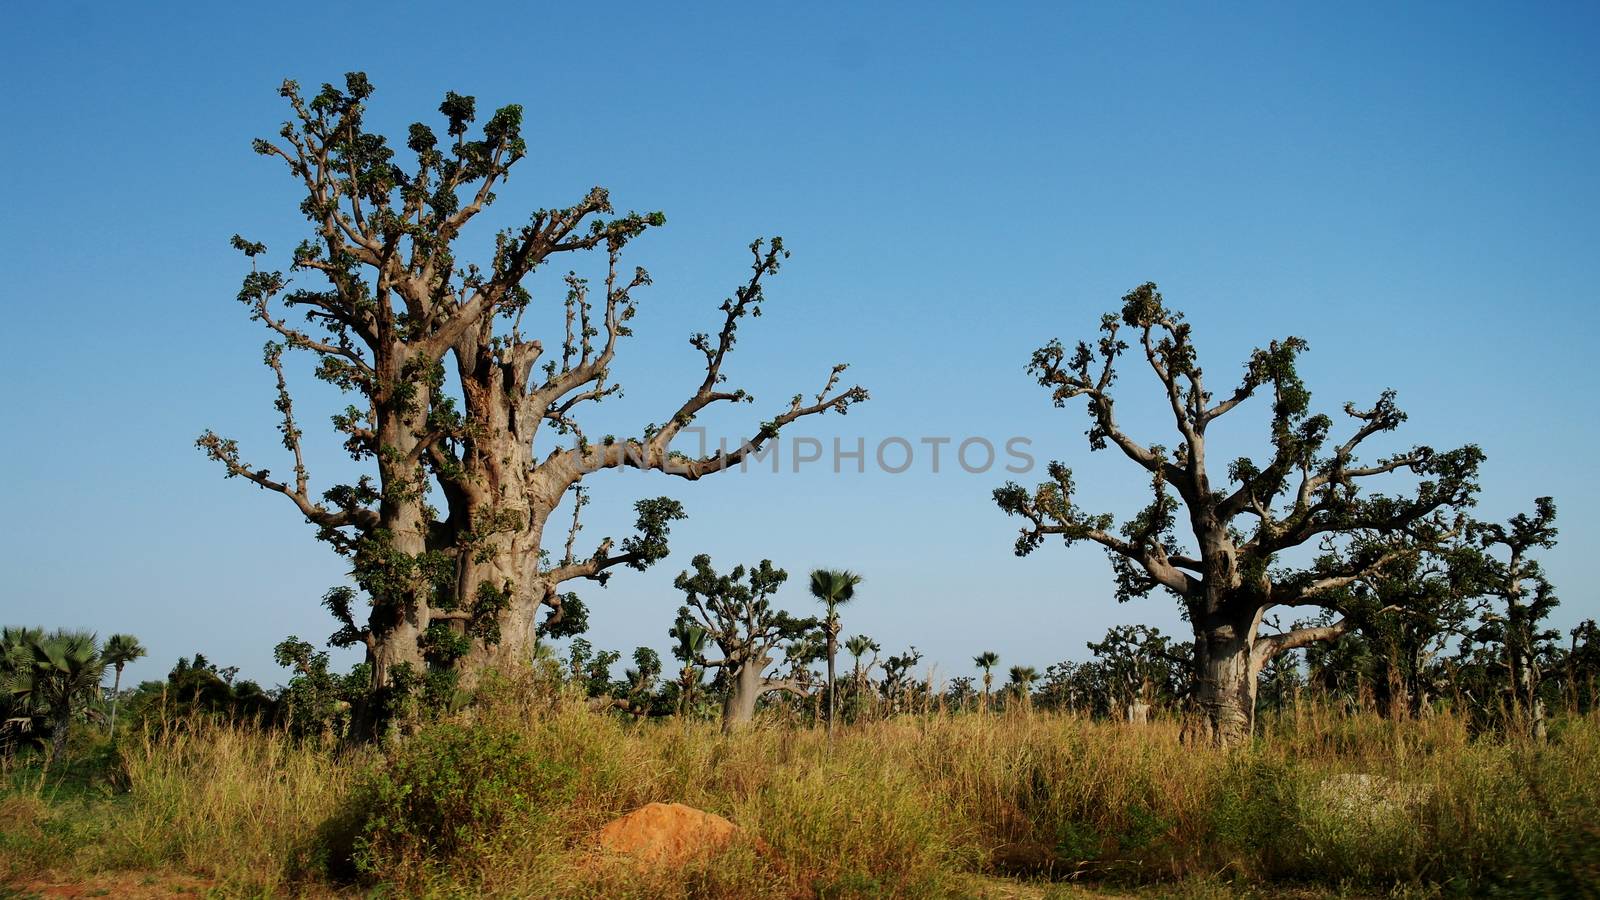 Baobab forest, Senegal by homocosmicos